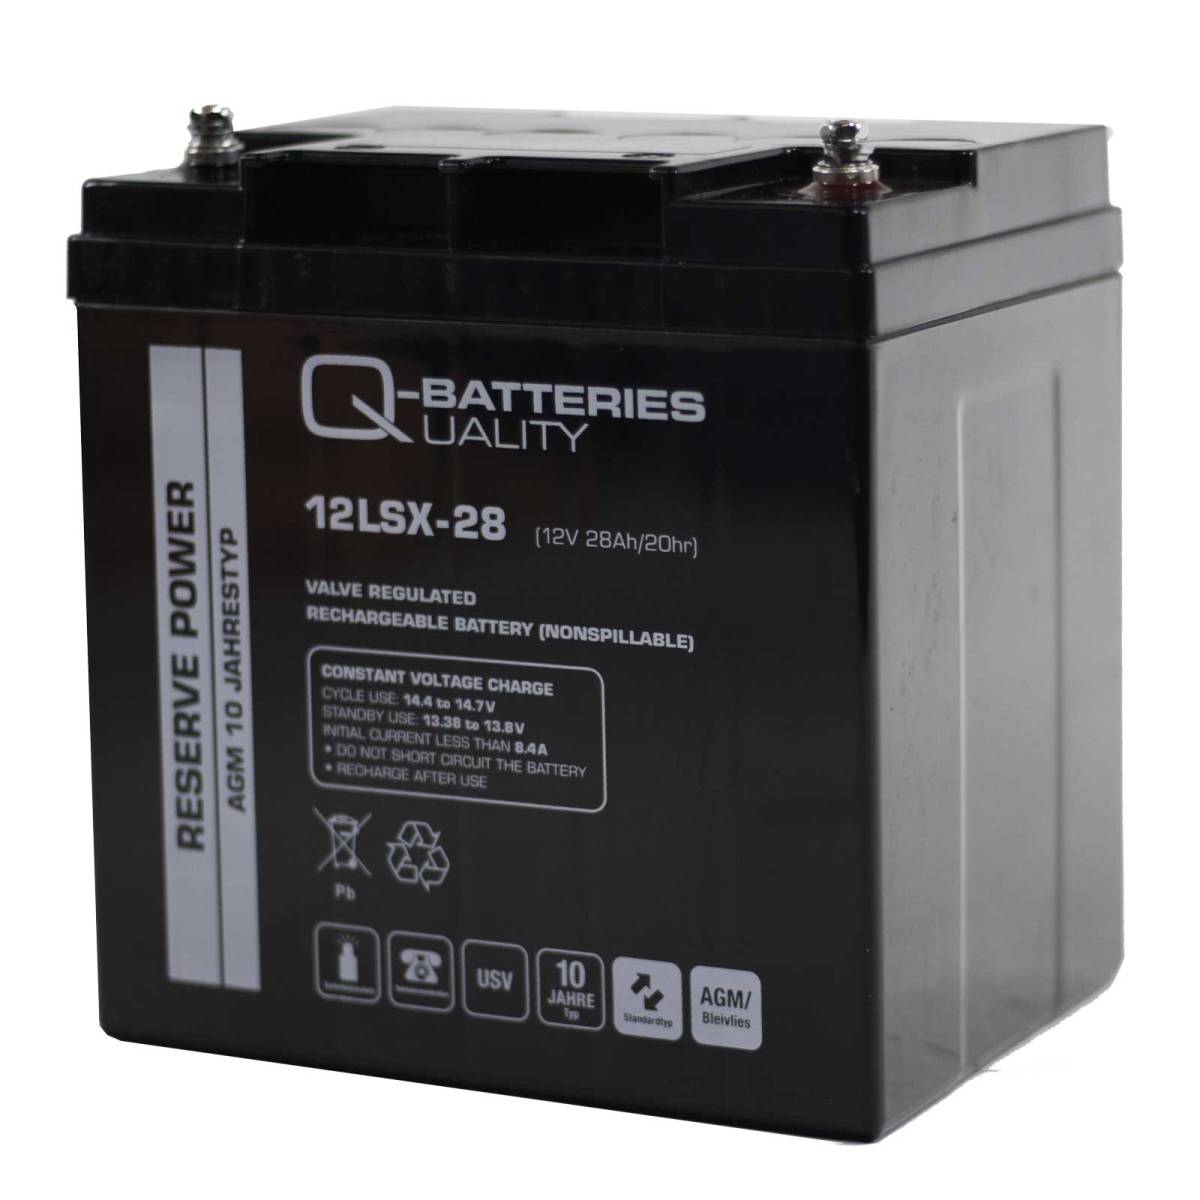 Q-Batteries 12LSX-28 12V 28Ah AGM Batteria 10 anni